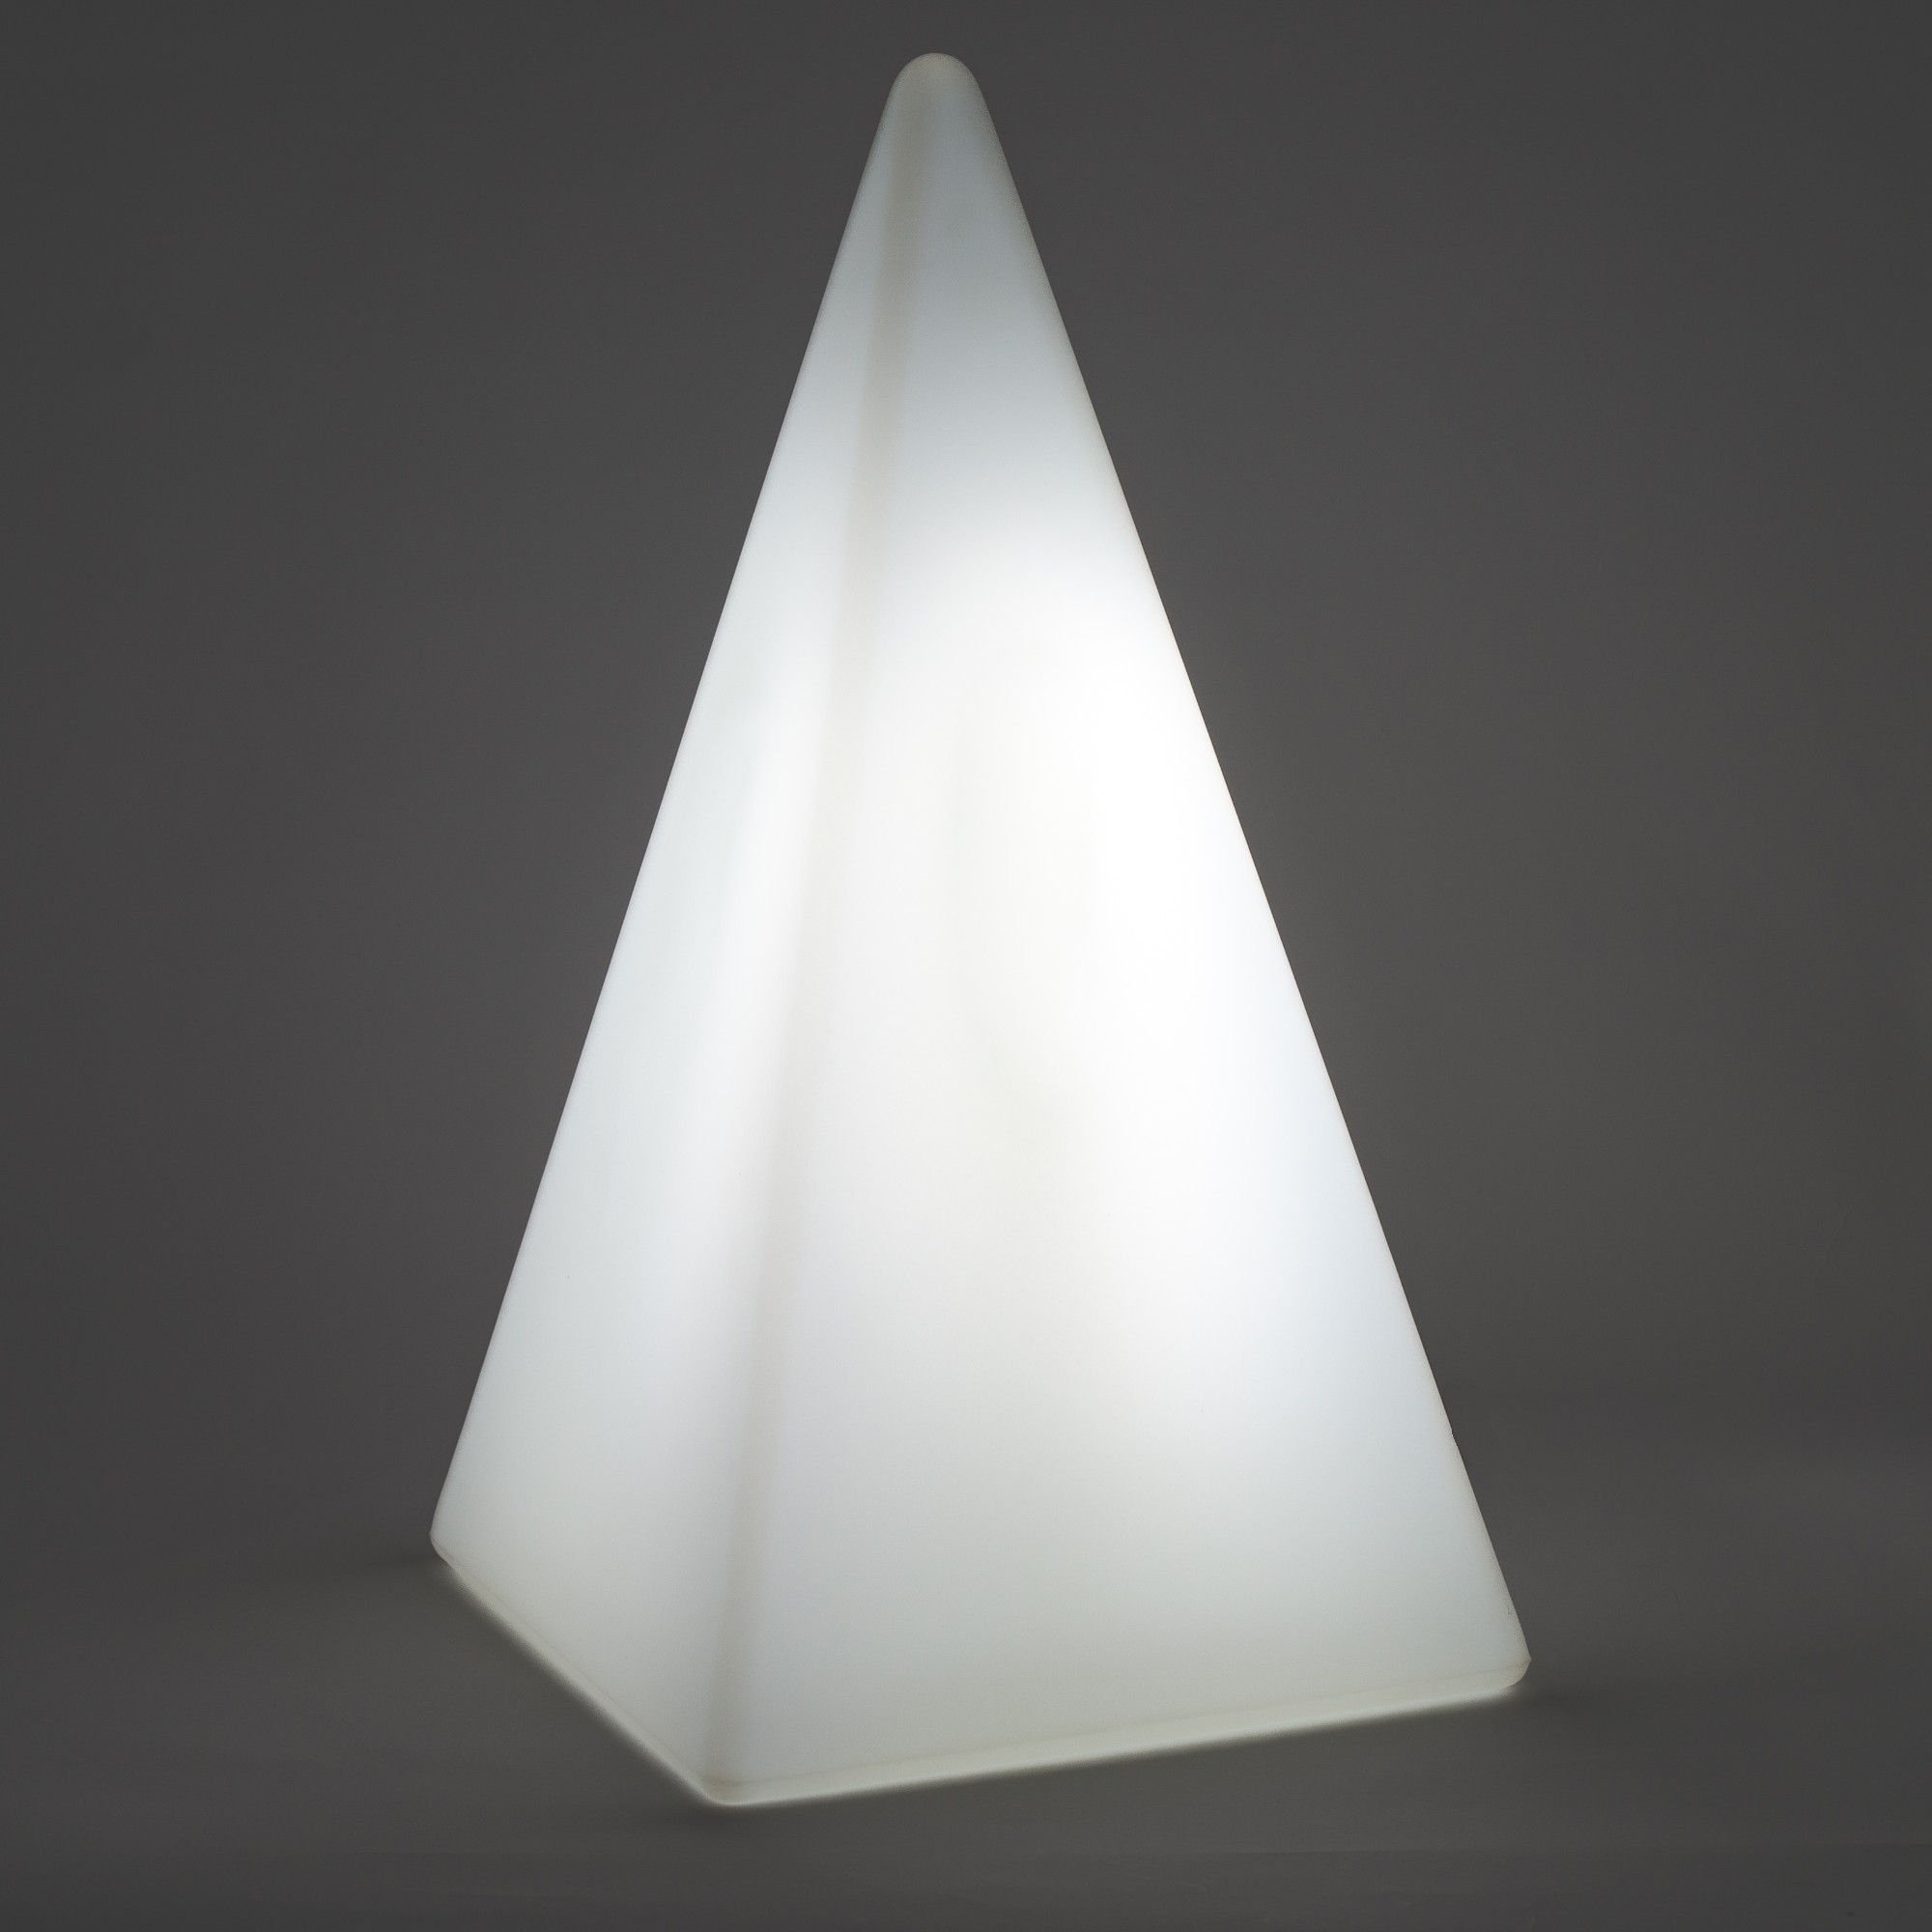 70208 Standleuchte Pyramide 54 cm der Firma EPSTEIN Design Leuchten